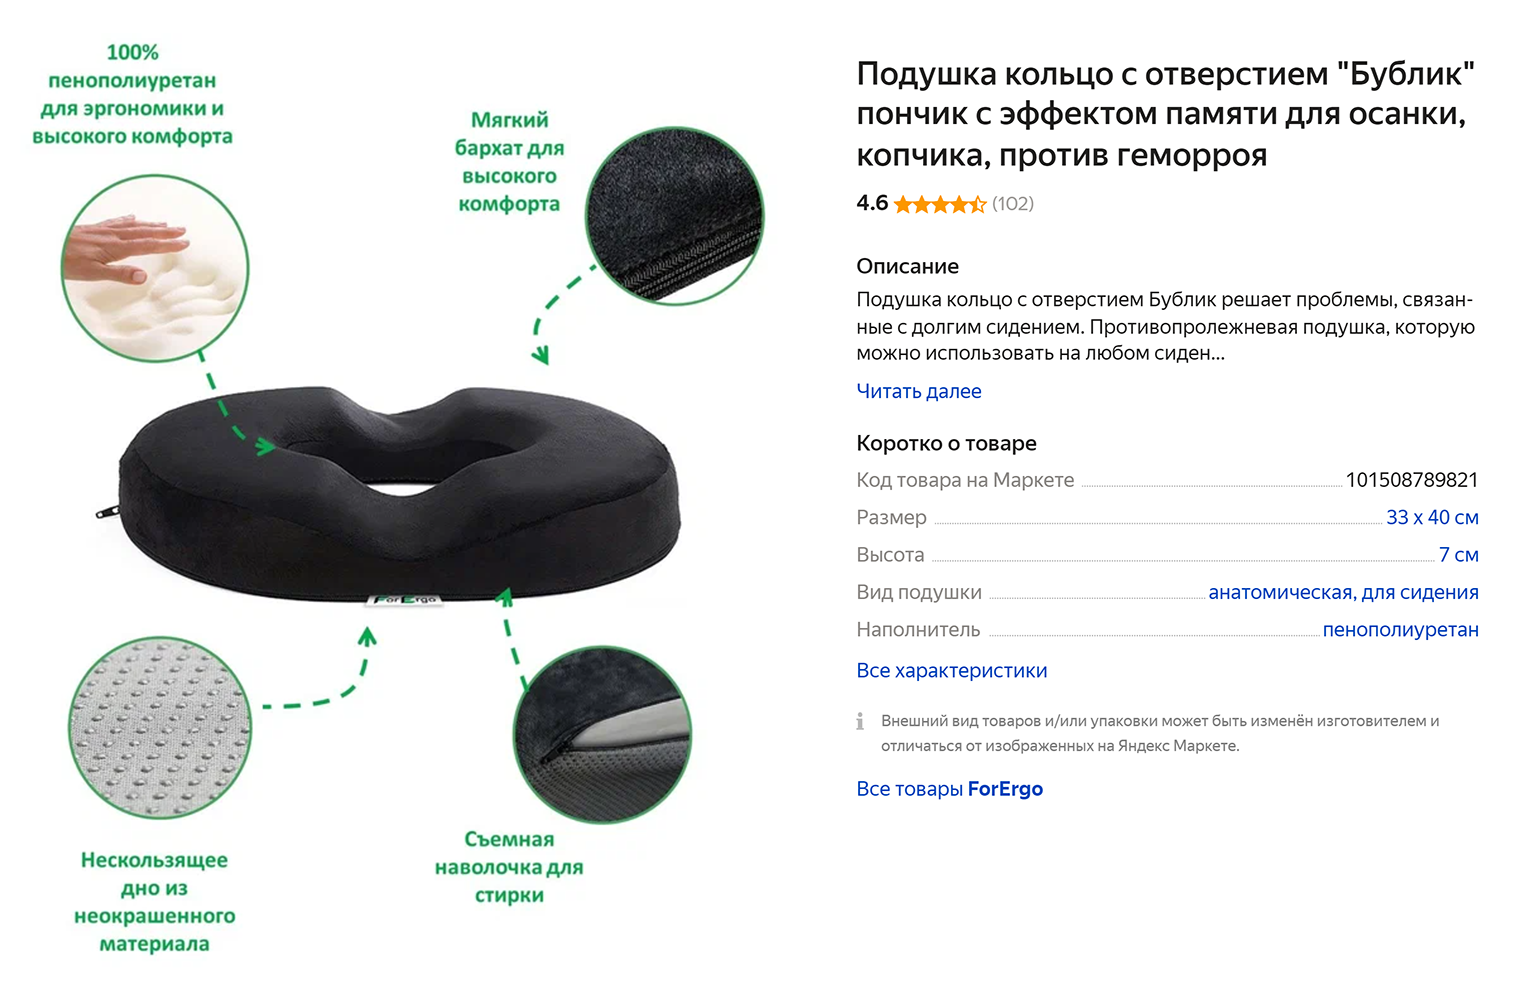 Подушка в форме пончика снимает нагрузку с области промежности во время сидения. Источник: market.yandex.ru